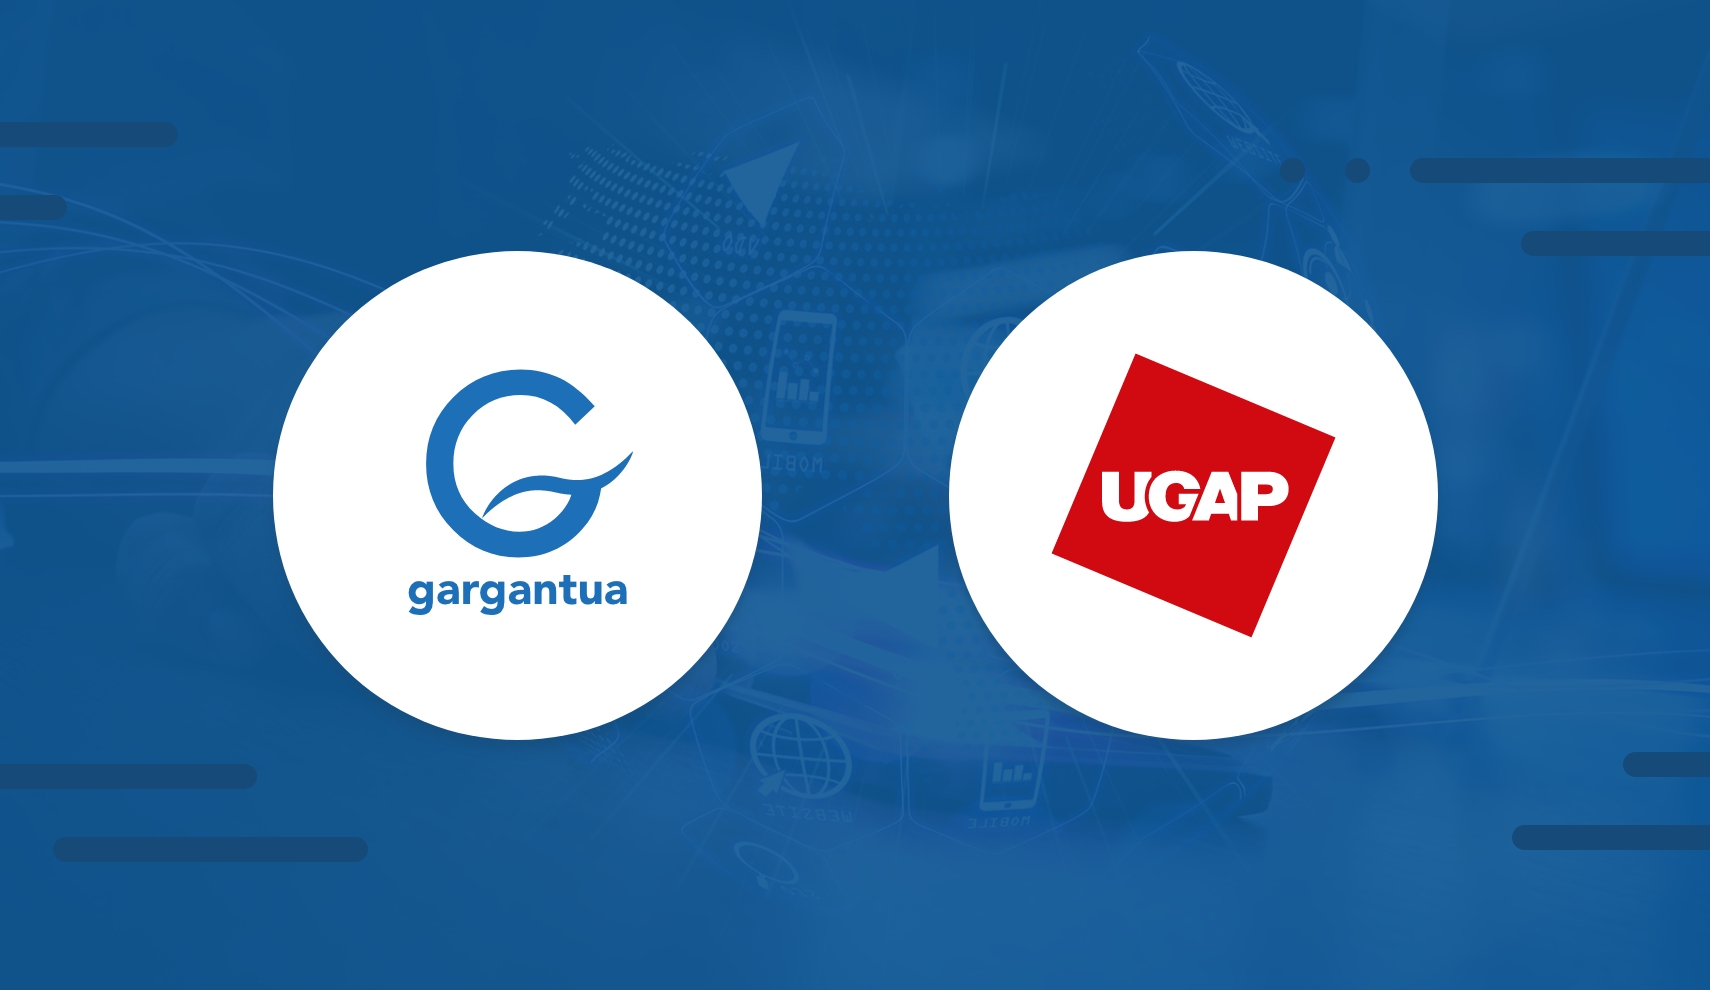 Siatel présente Gargantua - La suite logicielle Gargantua de Siatel référencée par l’UGAP